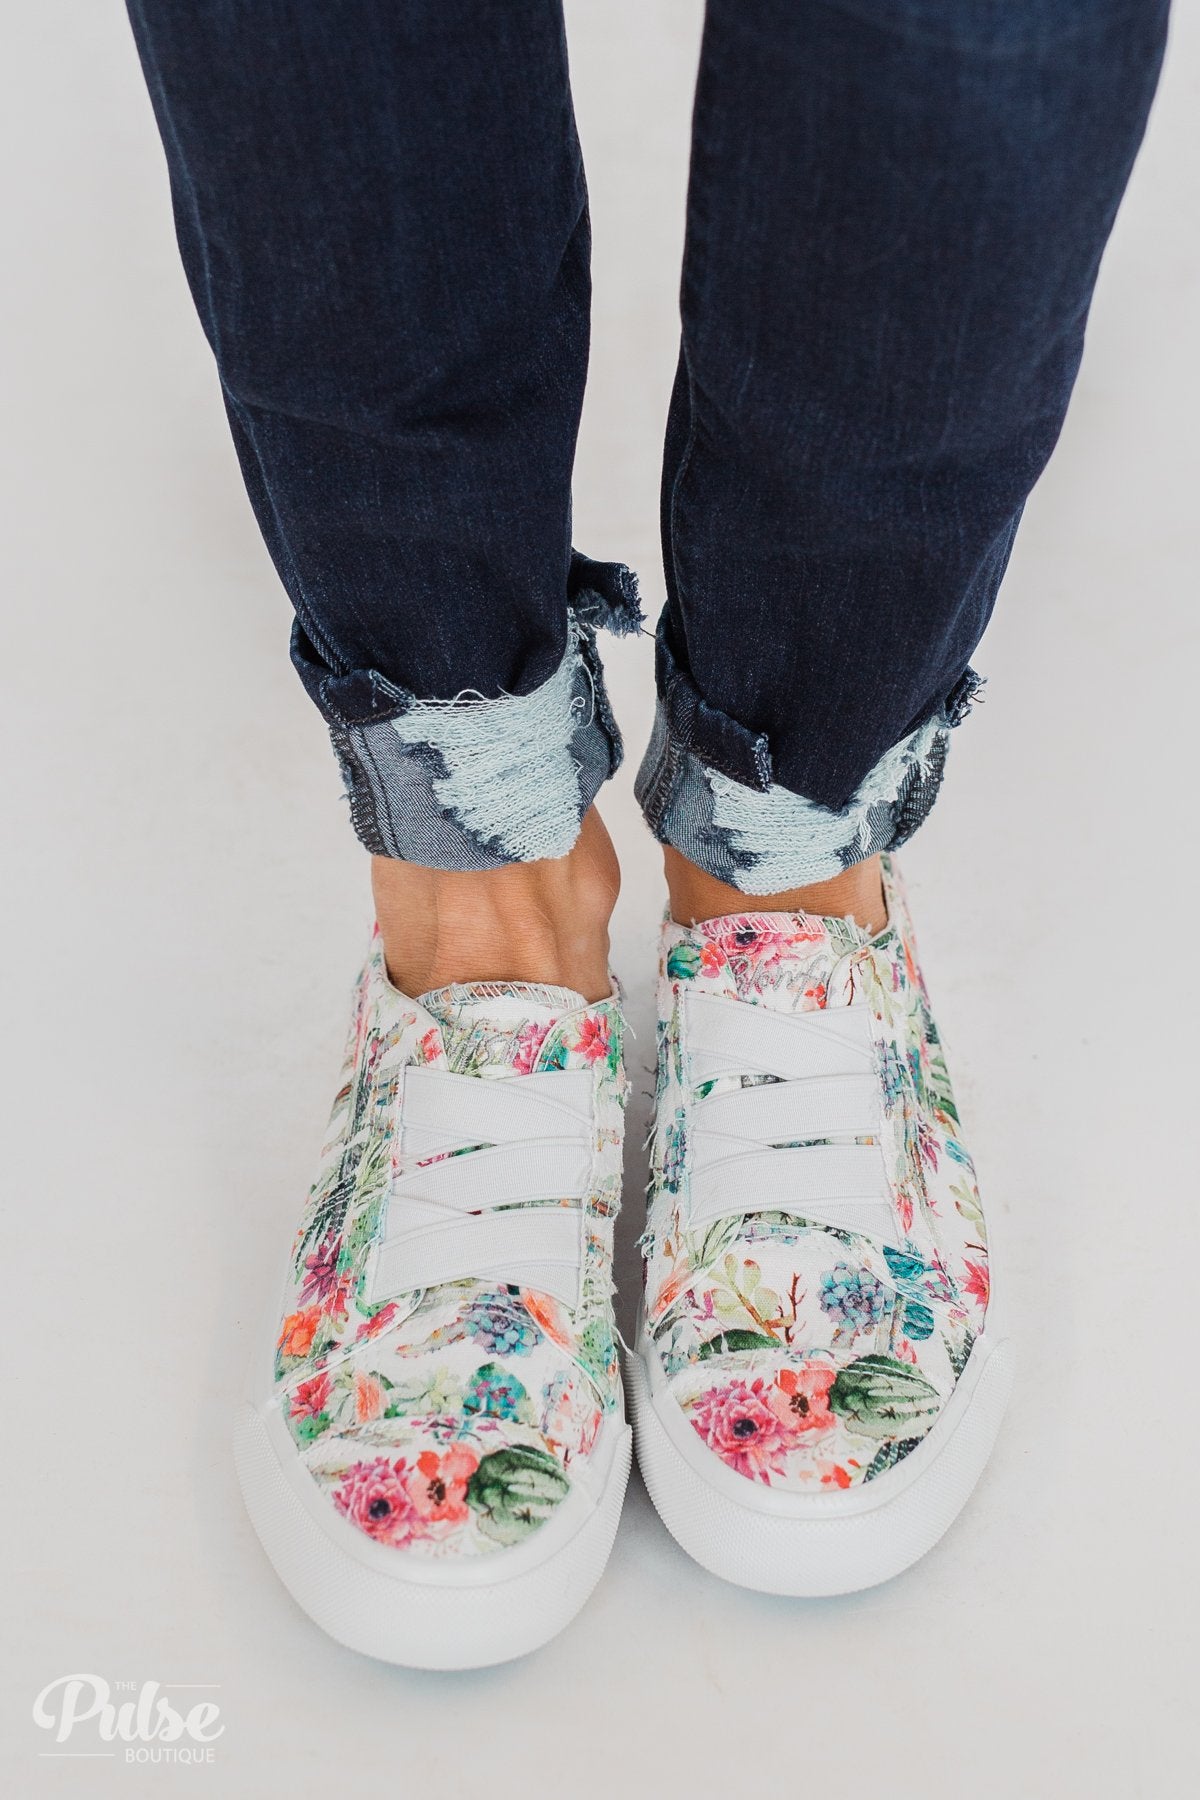 Blowfish Marley Sneakers- Off White Cactus Flower Print